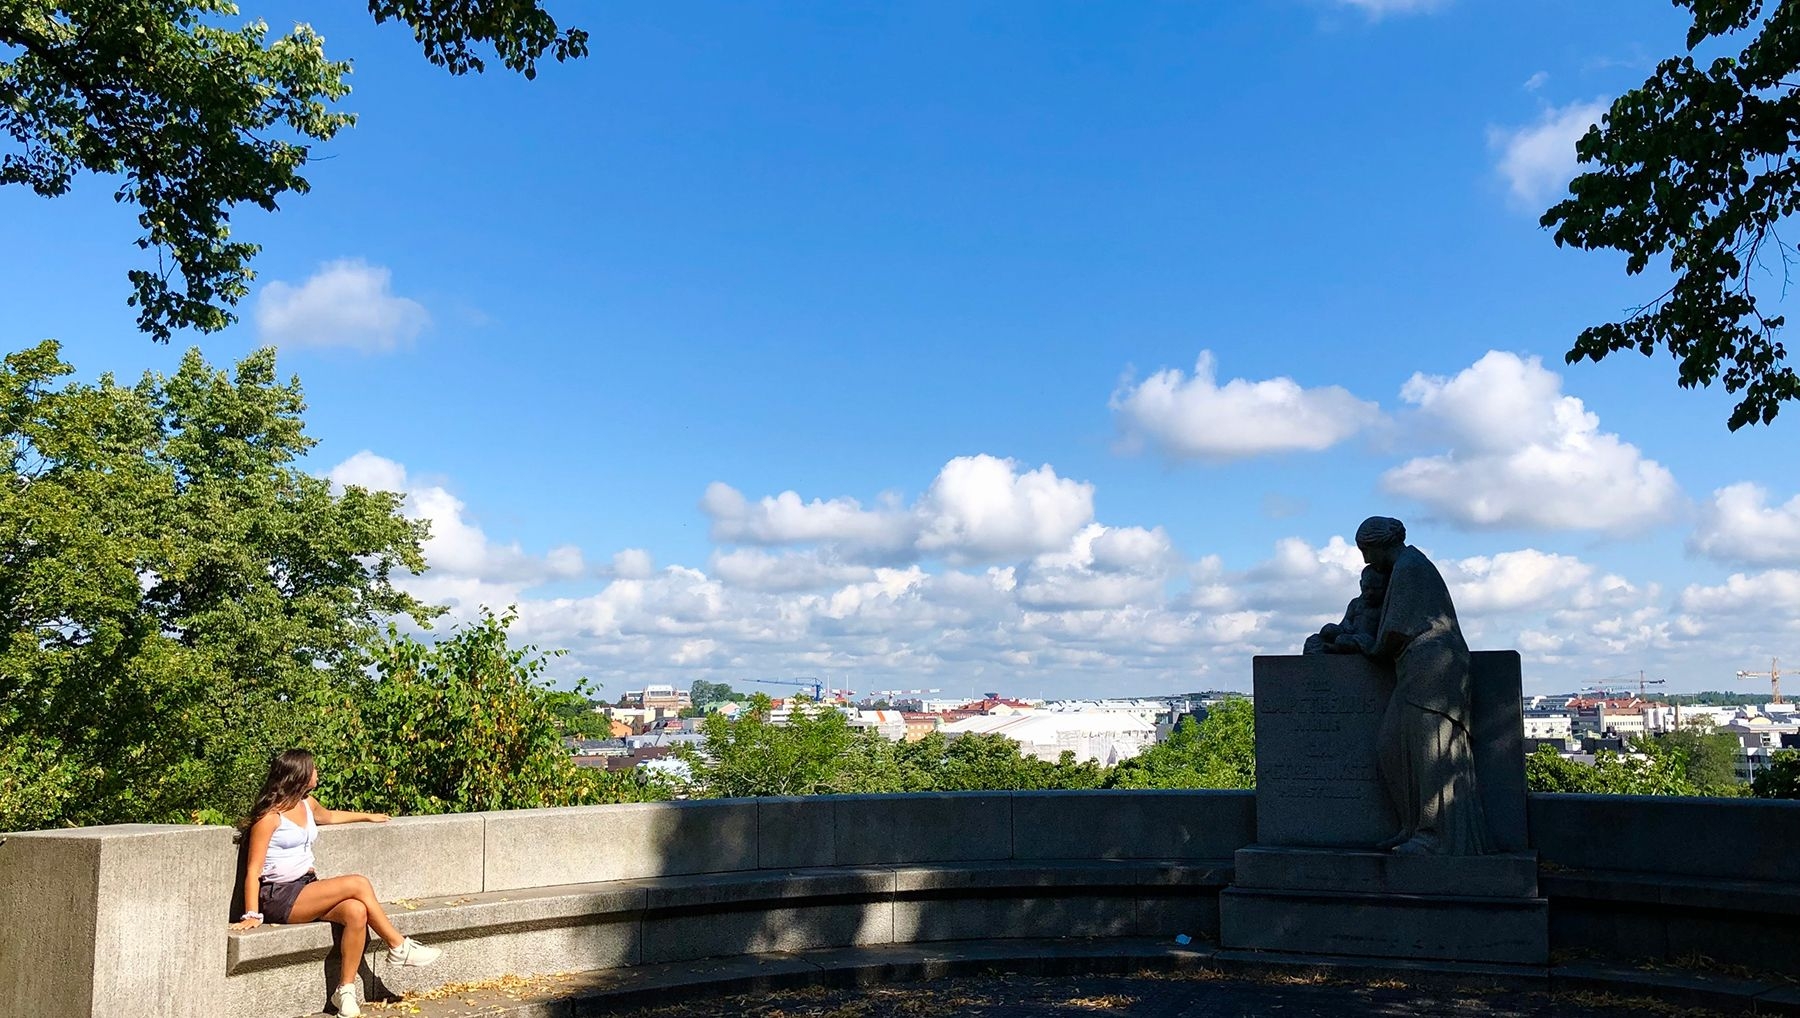 Henkilö istuu G. A. Petreliuksen muistomerkin 11 metriä leveällä betonisella kaarella ja katsoo kohti kaupunkia. Muistomerkki on puiden varjostama. Taivaalla on pilvenhattaroita.